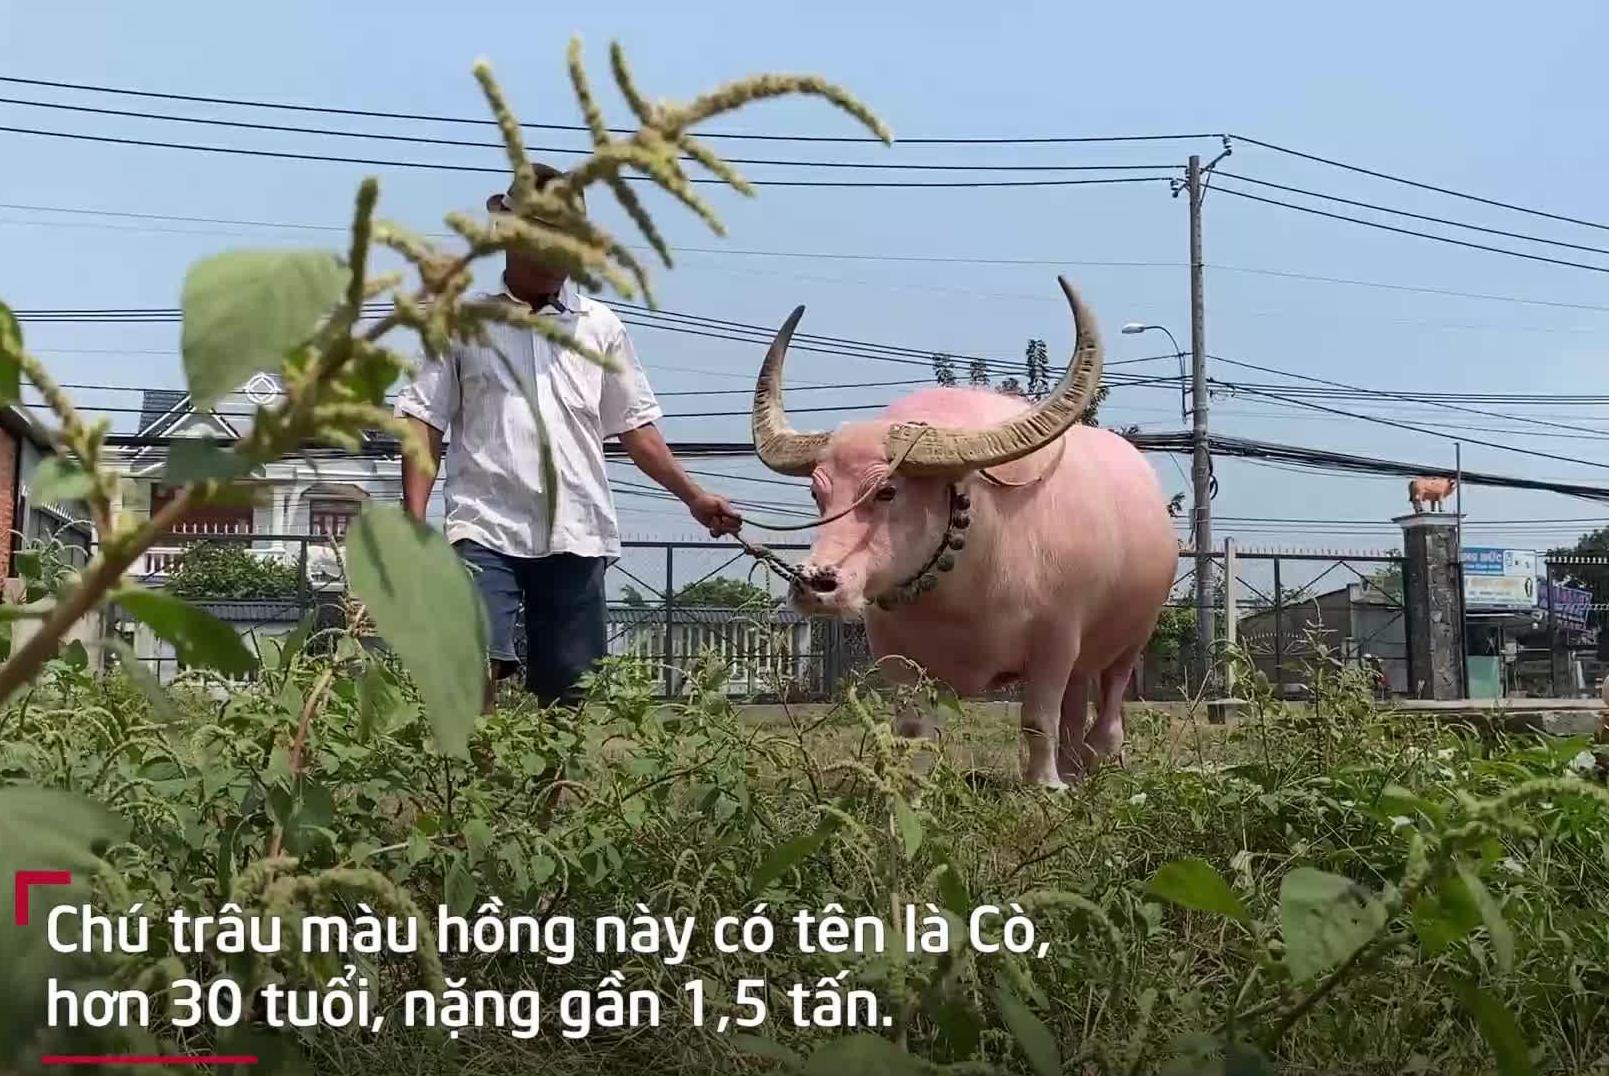 Chú trâu hồng tên Cò là nguồn sức kéo chính của nhà ông Ghên (ảnh VTCnews)